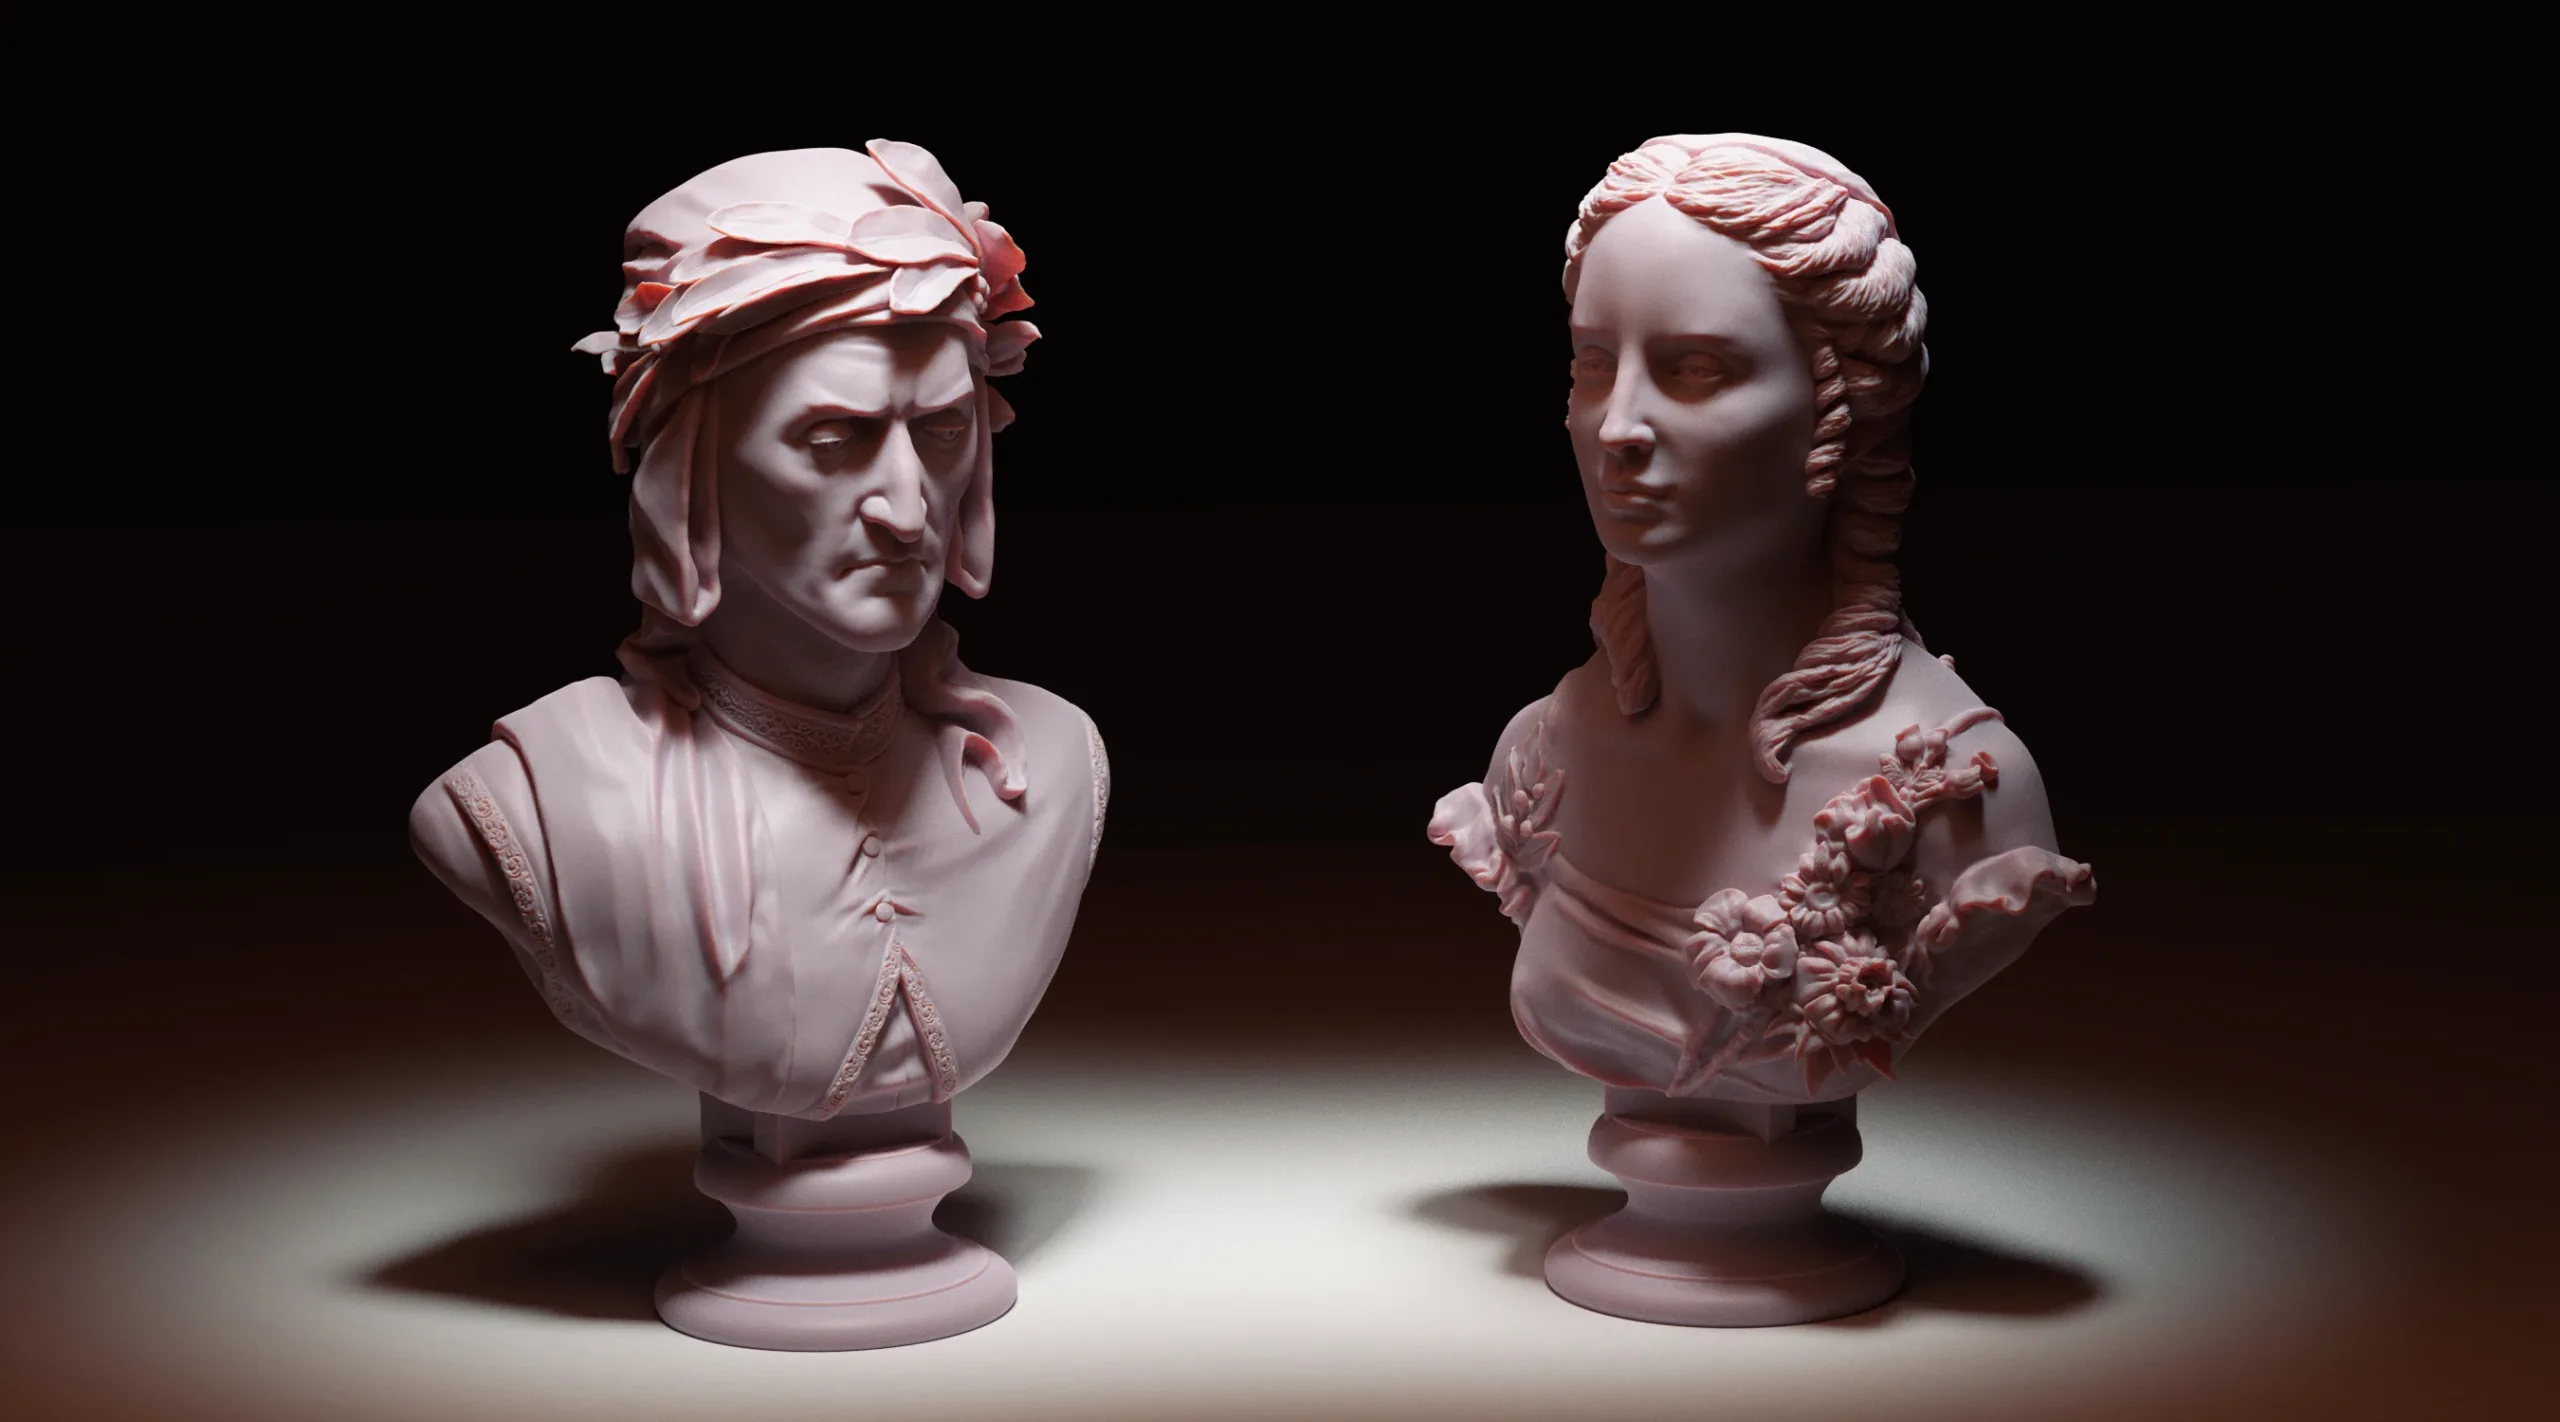 Dante Alighieri 3D printable STL files in 135mm scale